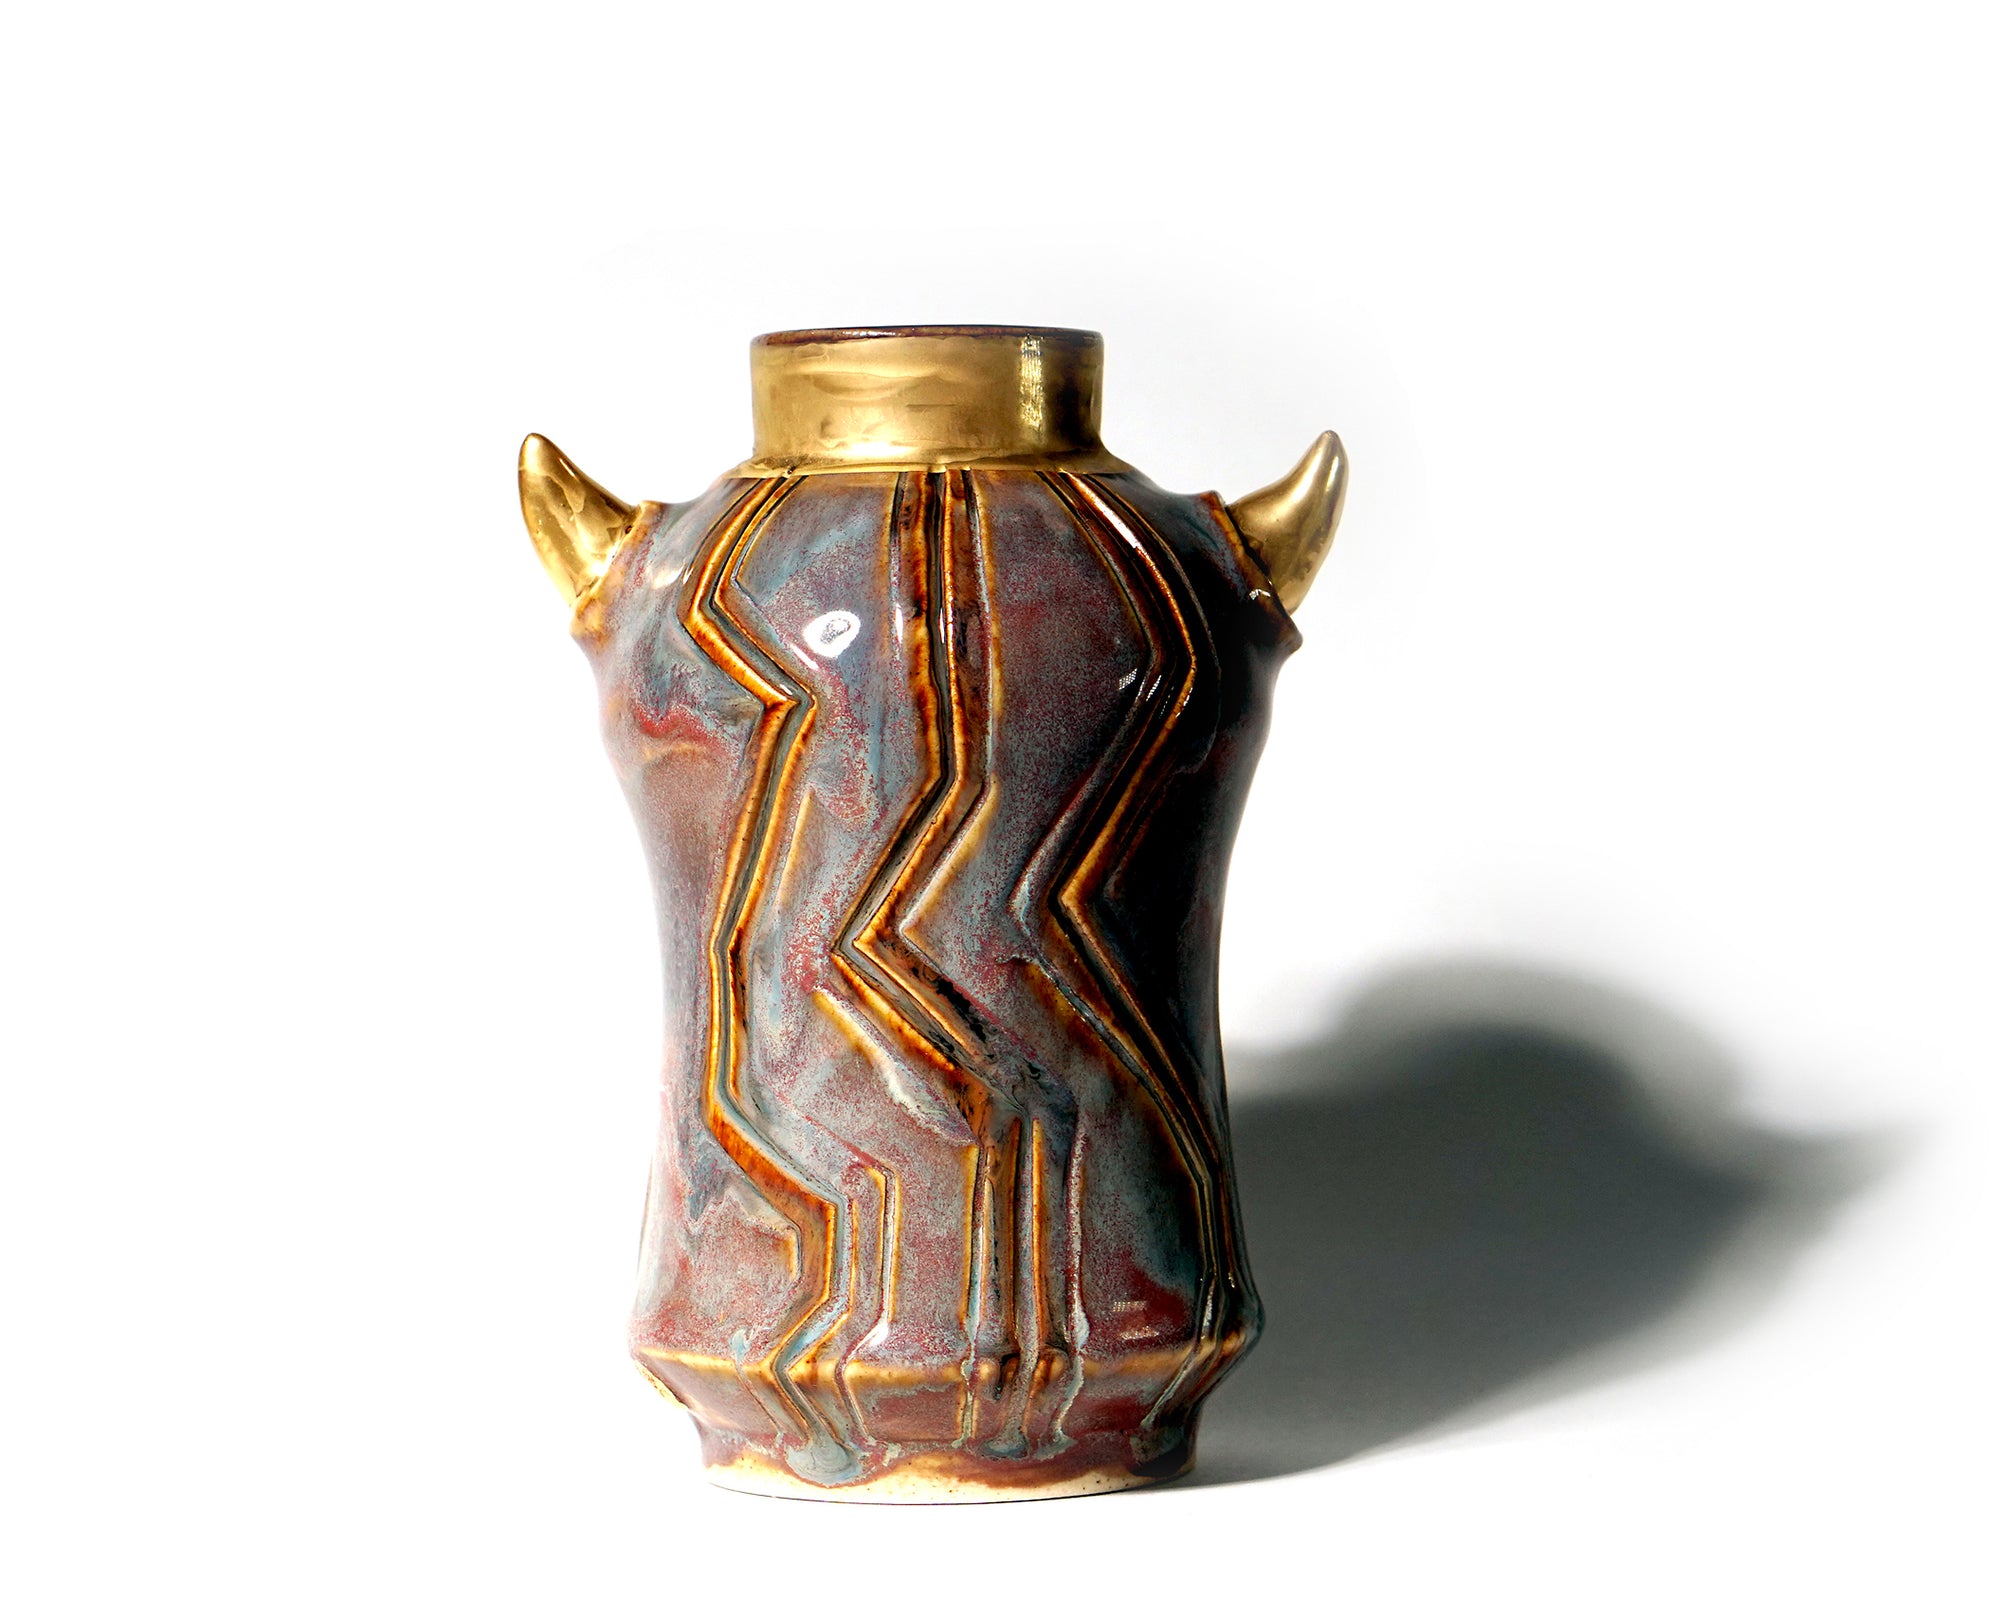 Dogabi Vase - #129 - "Daniel" - Space Camp